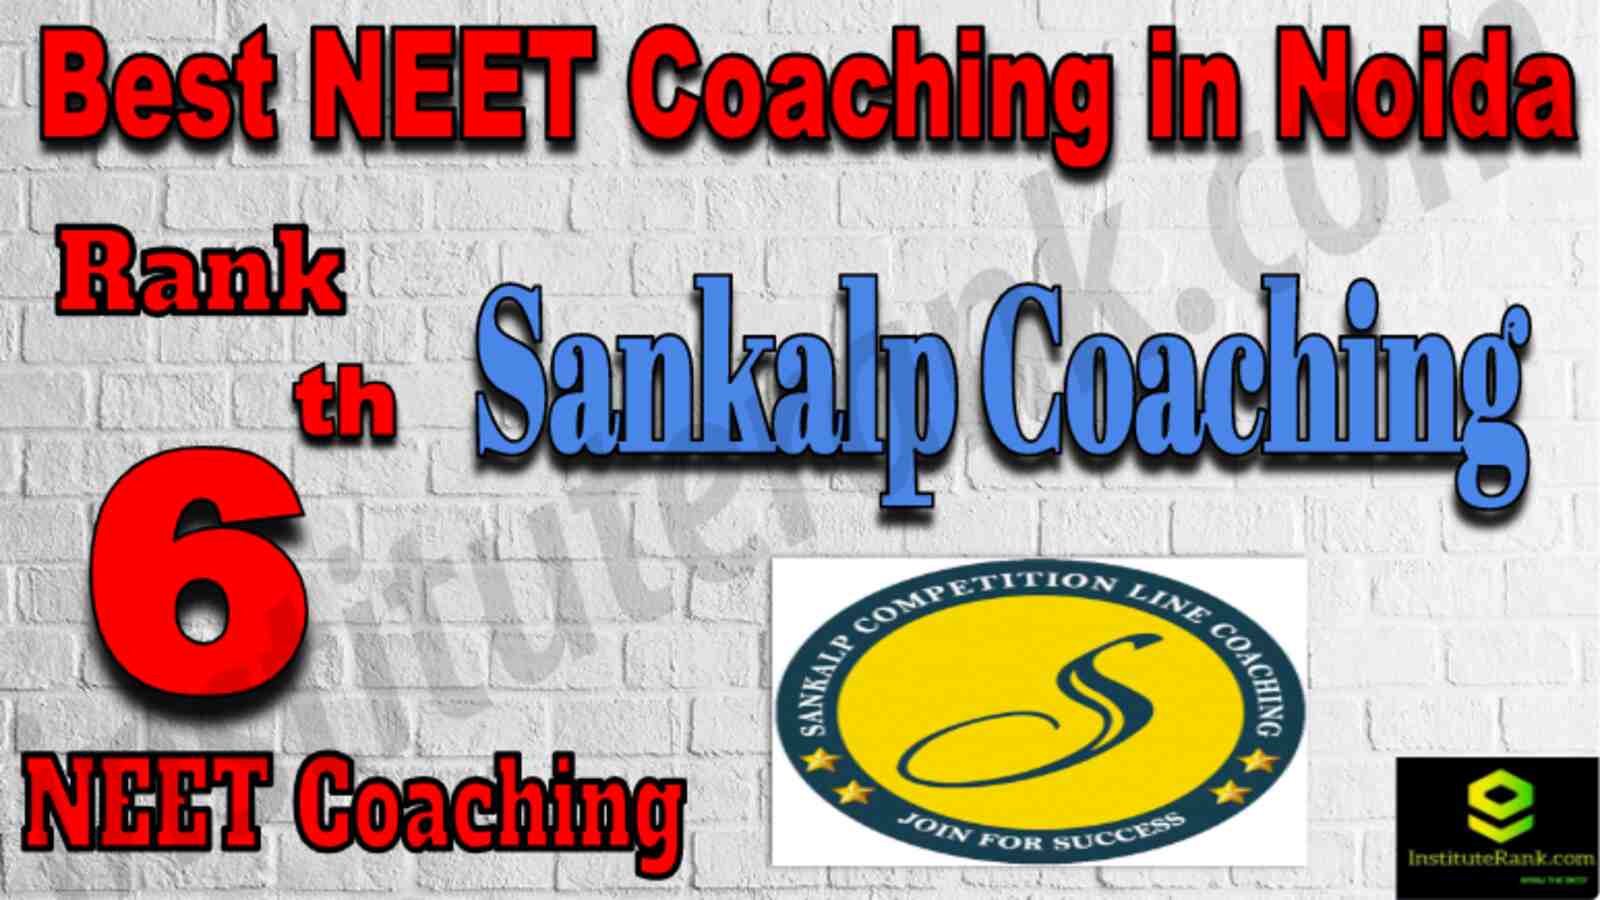 Rank 6 Best NEET Coaching in Noida